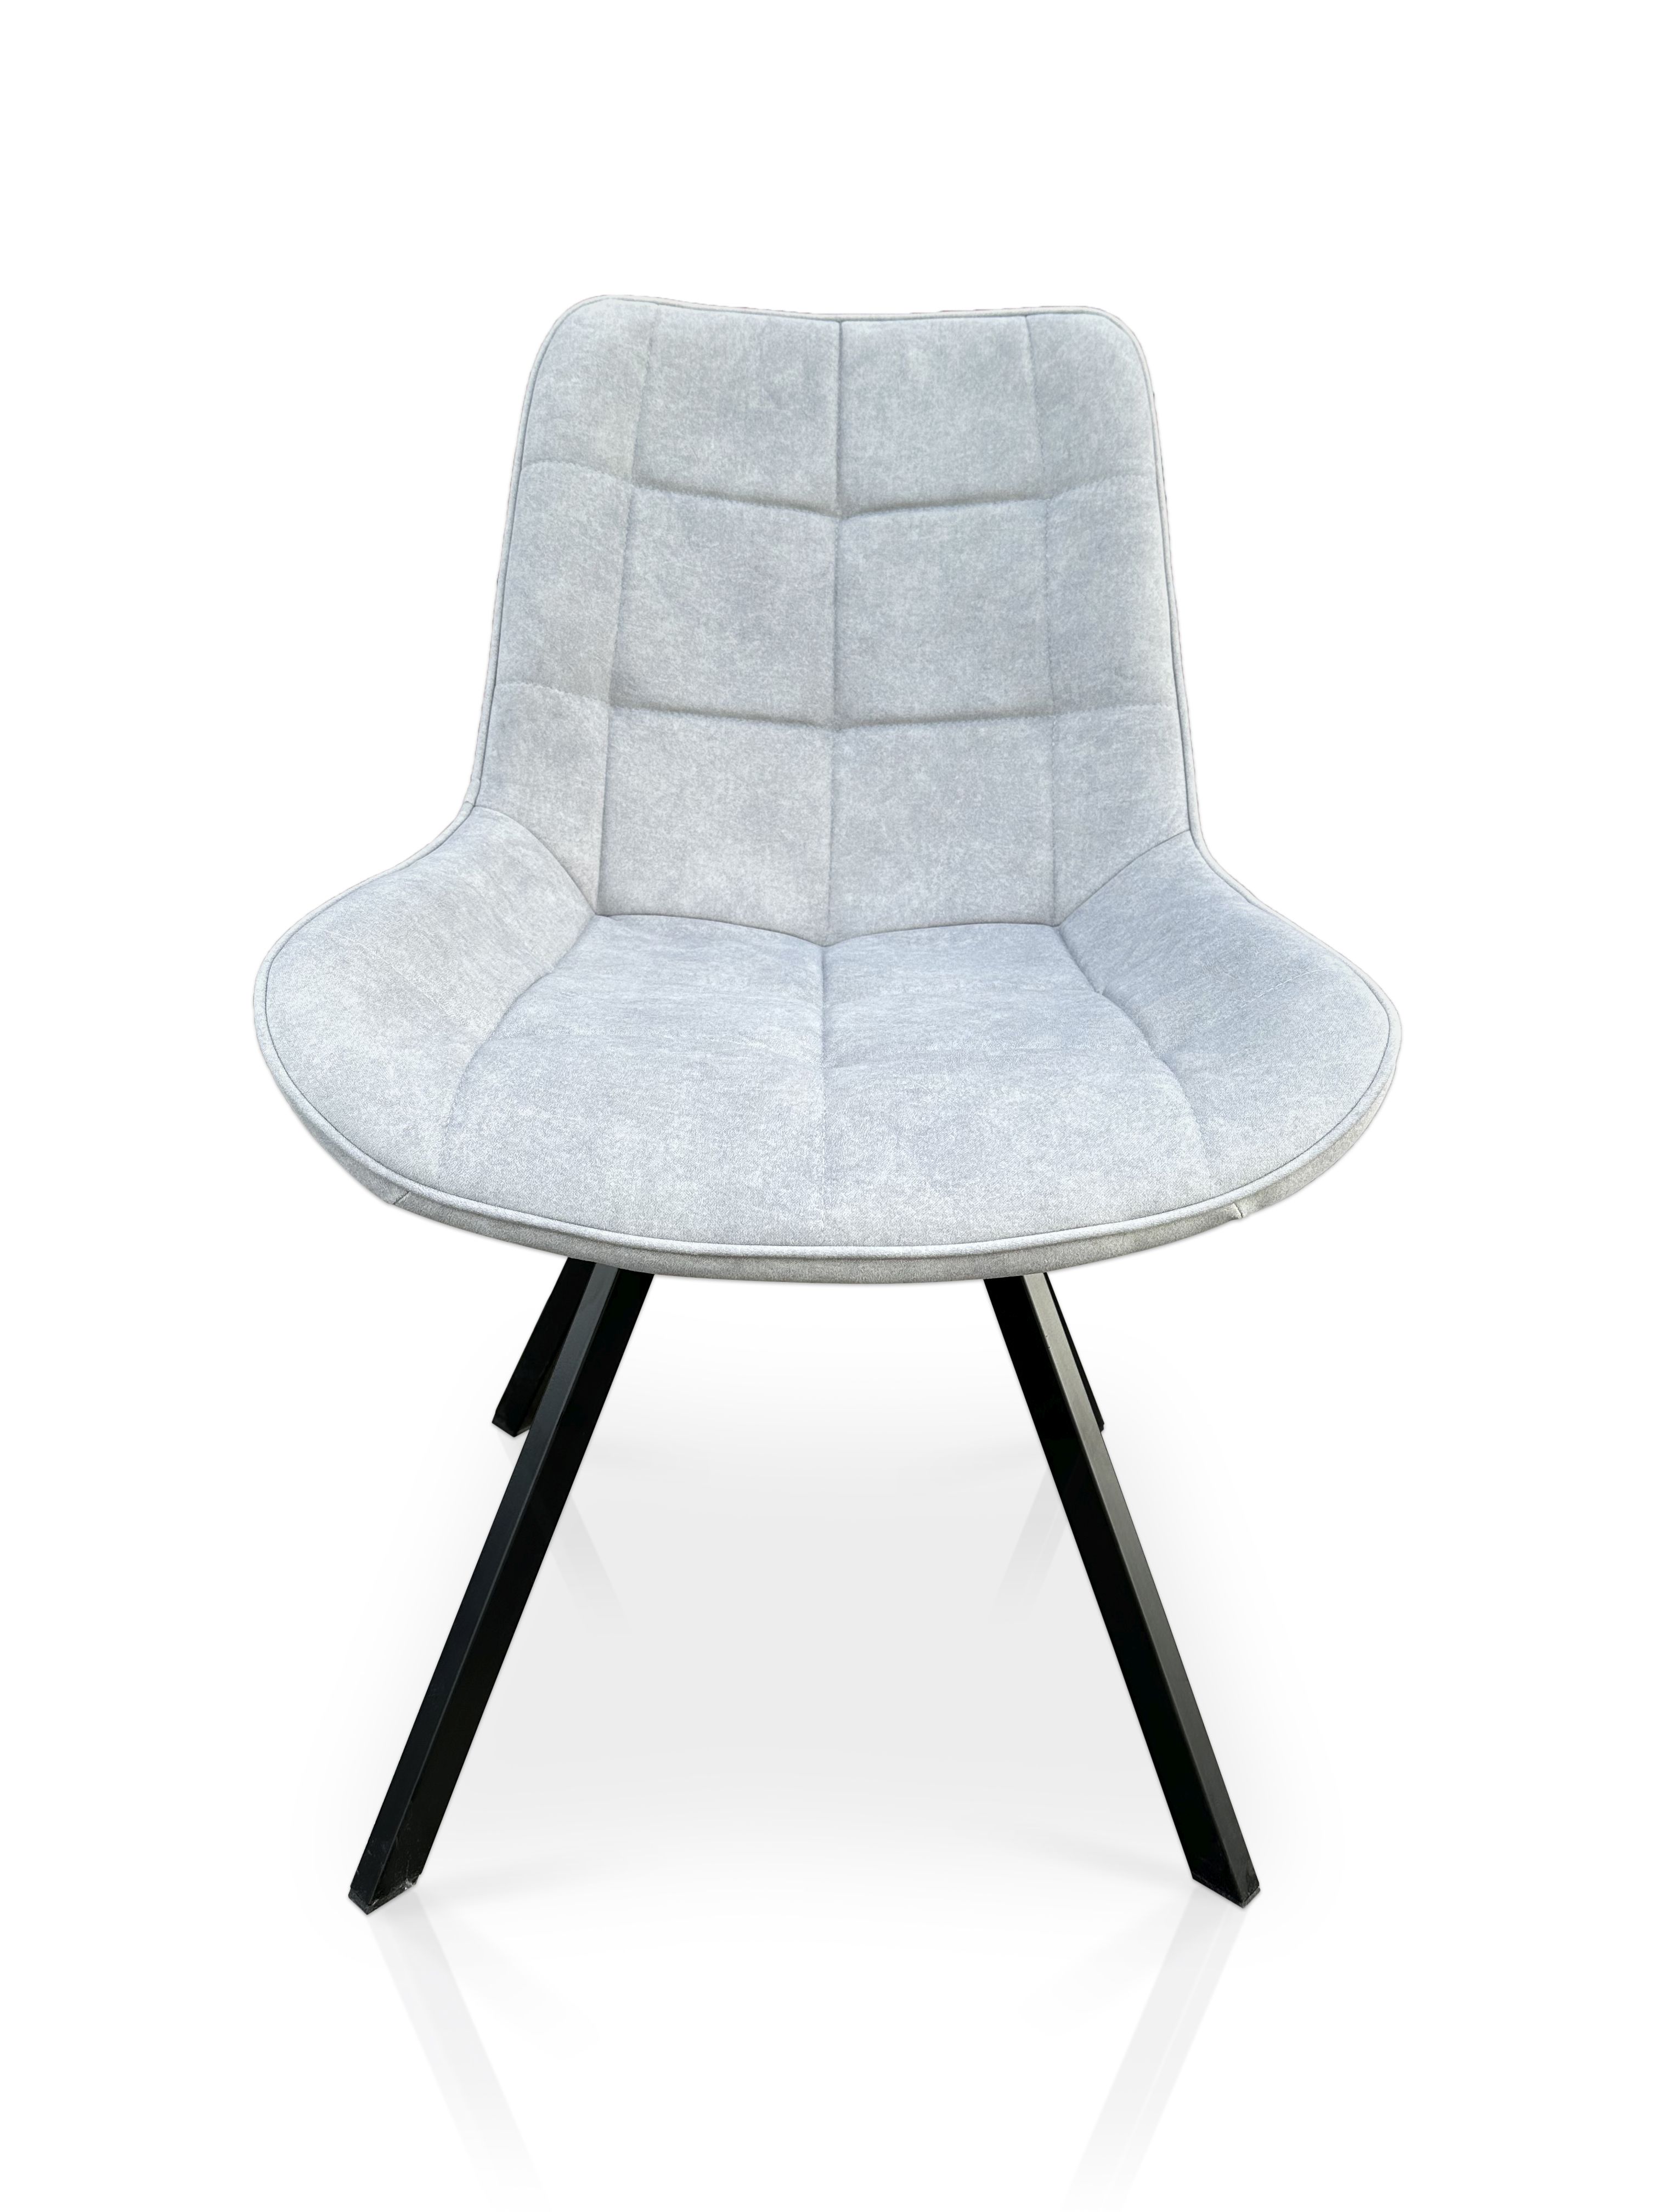 Krzesło Lapo 21137 obrotowe 360 st Kwadrat w stylu loftowym Cloud 81